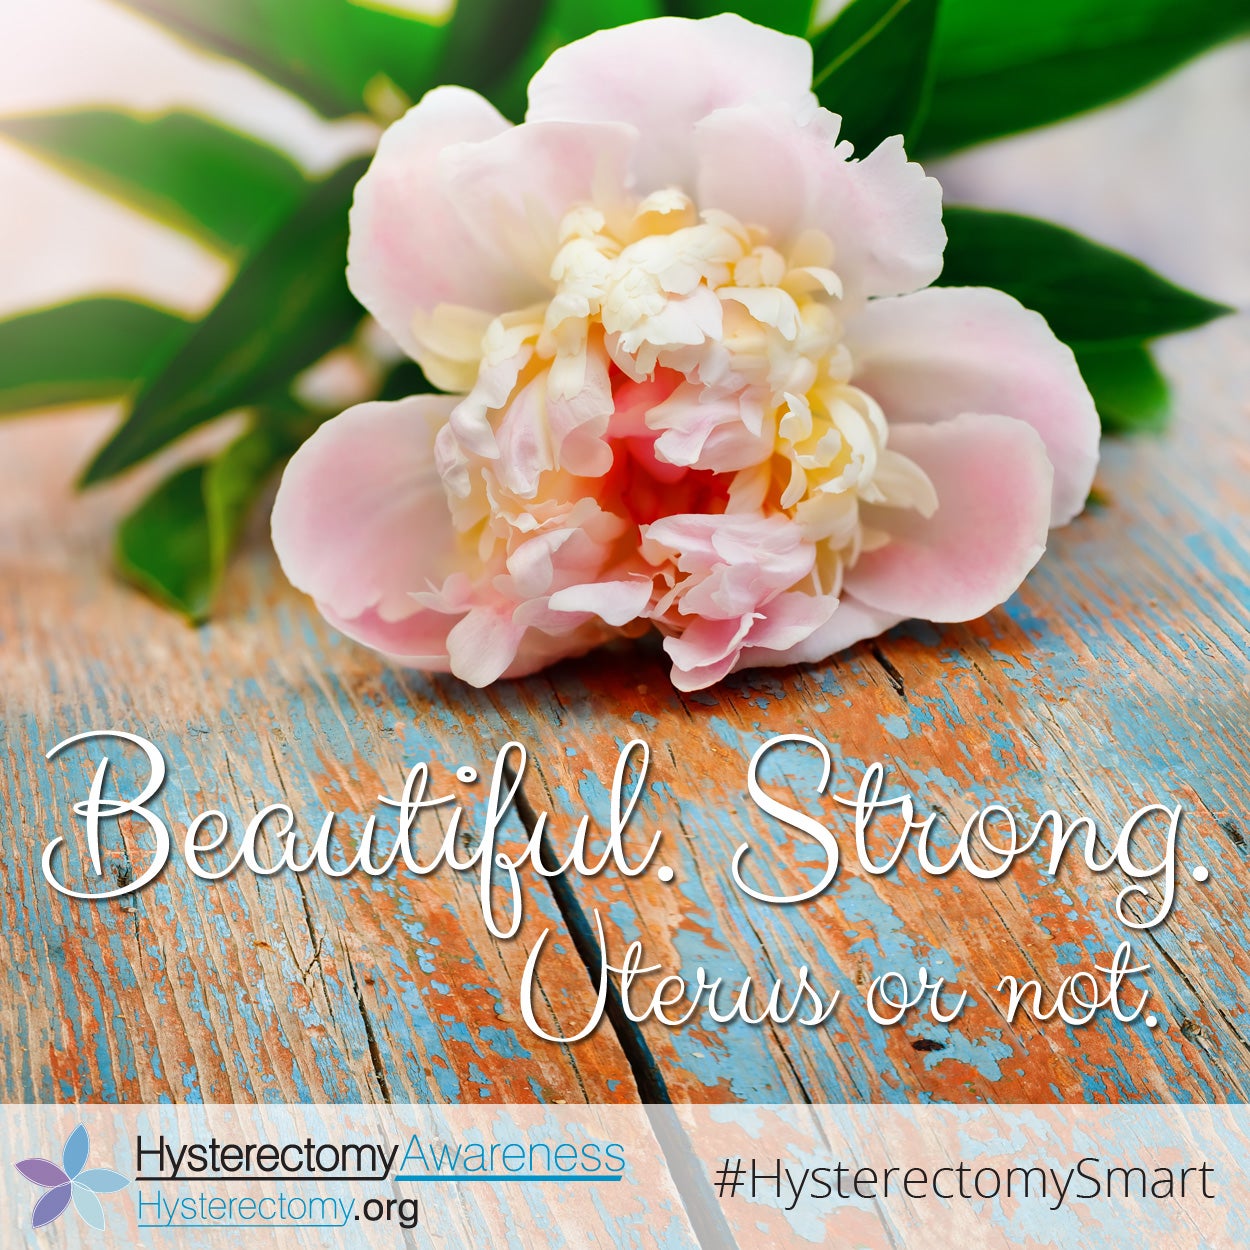 Beautiful Strong Uterus or Not #StillaWoman #HysterectomySmart